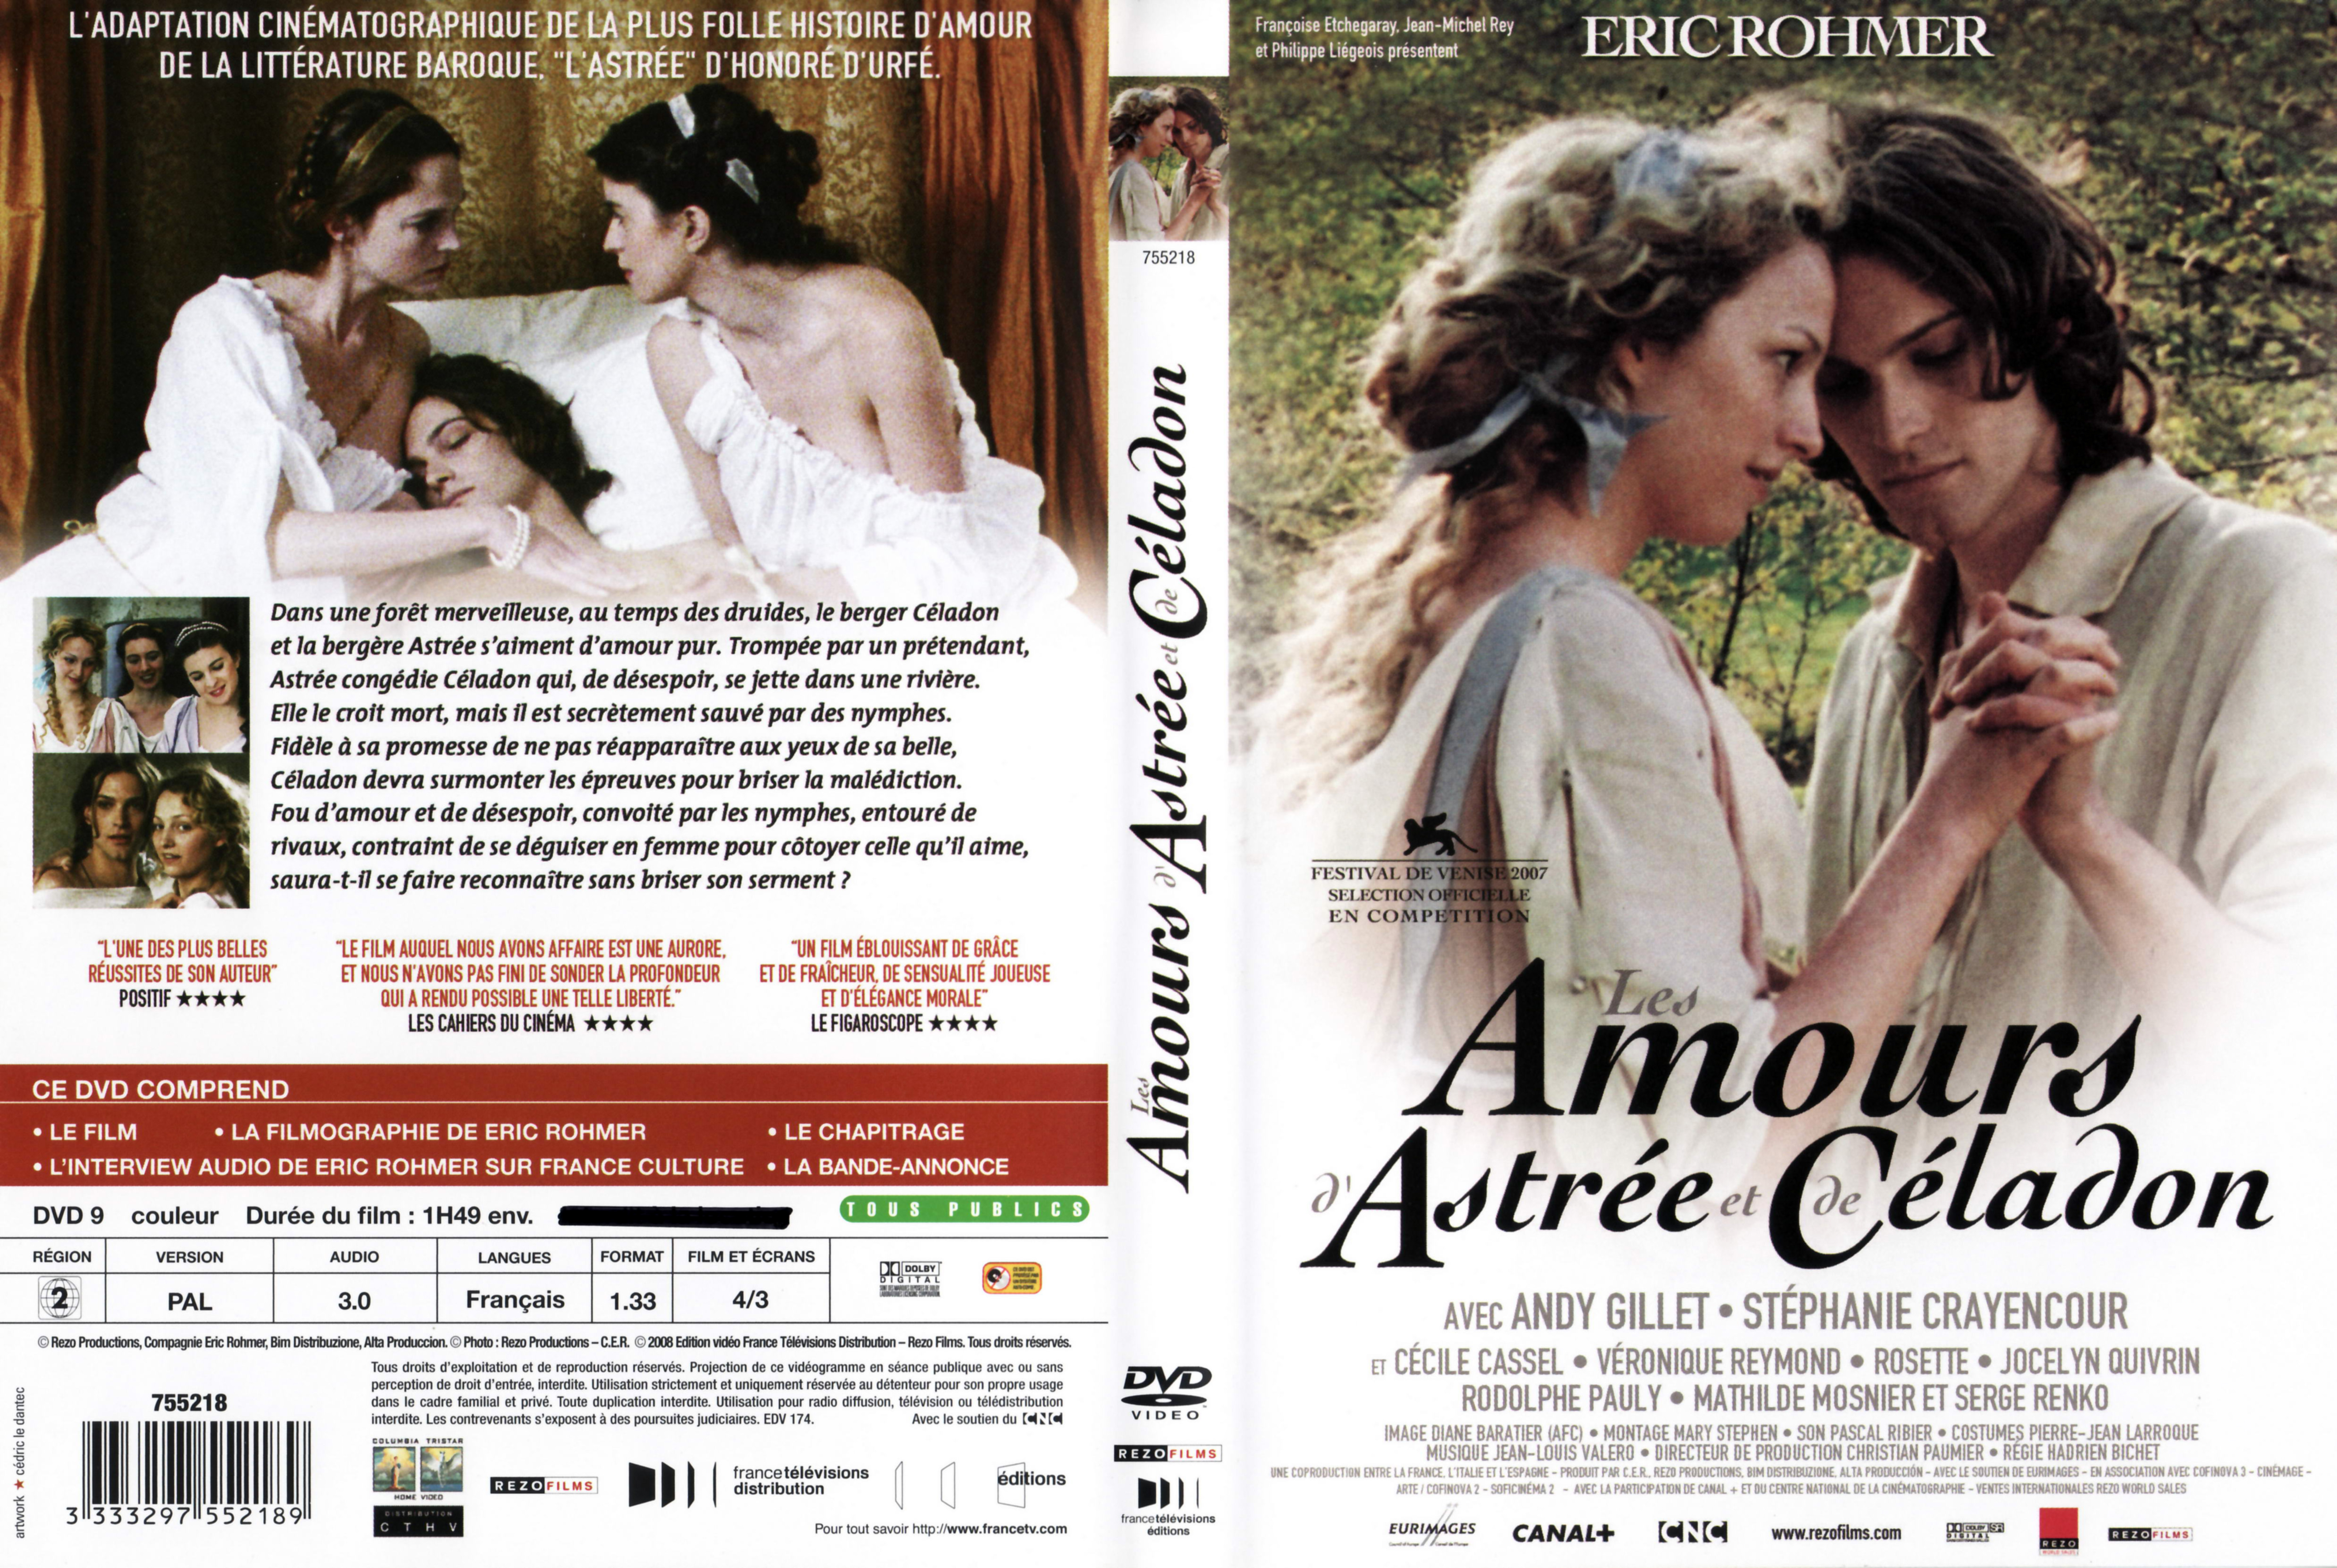 Jaquette DVD Les amours d